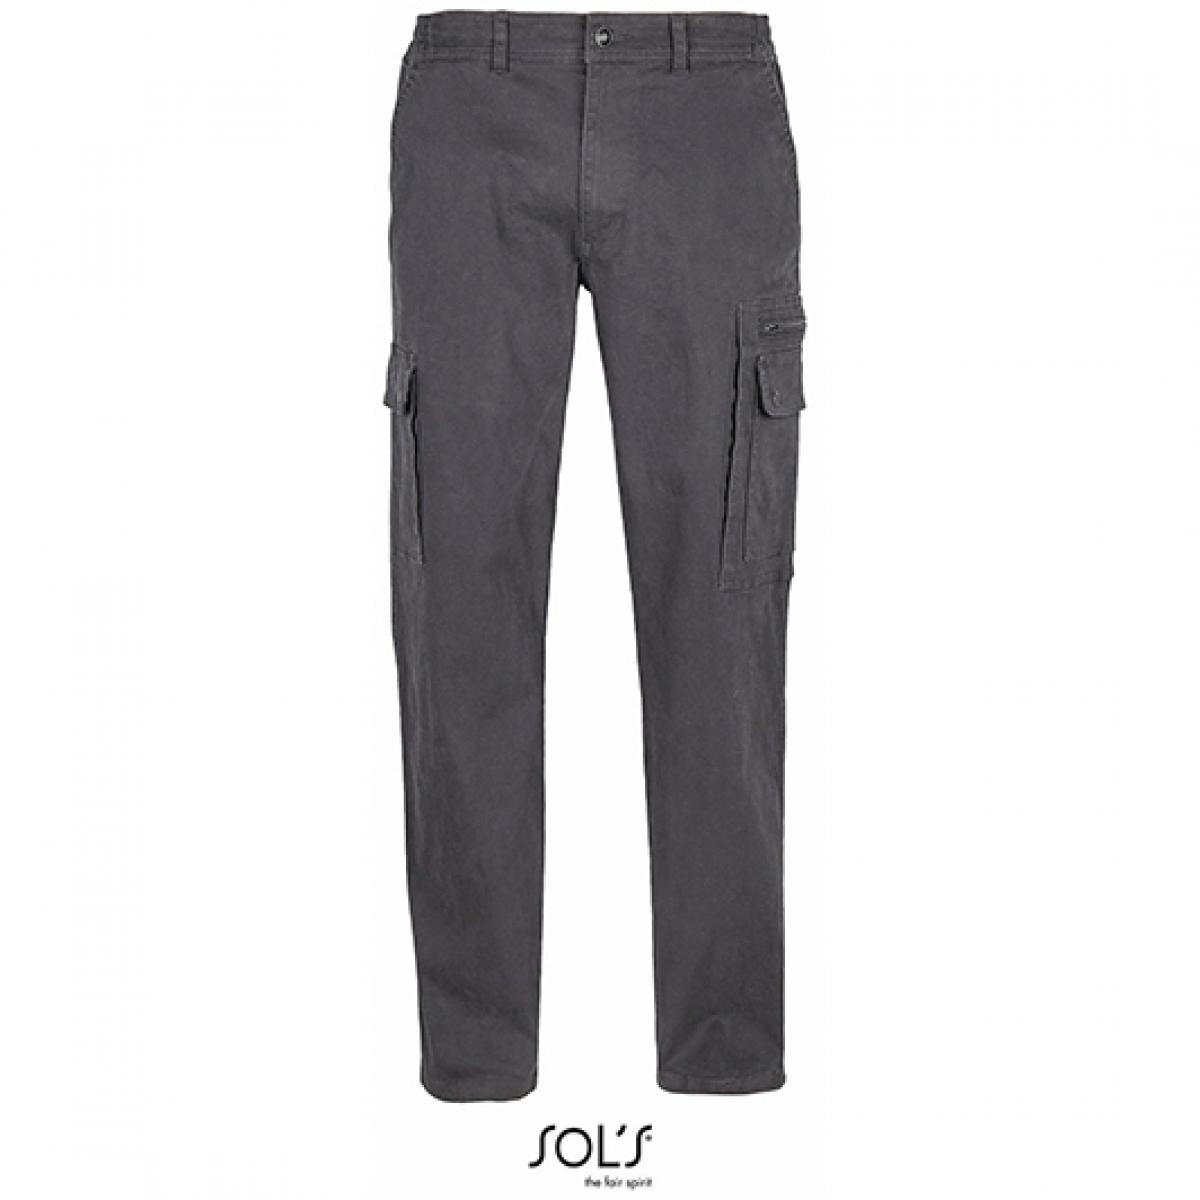 Hersteller: SOLs Herstellernummer: 03820 Artikelbezeichnung: Men´s Docker Pants - Herren Arbeitshose Farbe: Dark Grey (Solid)